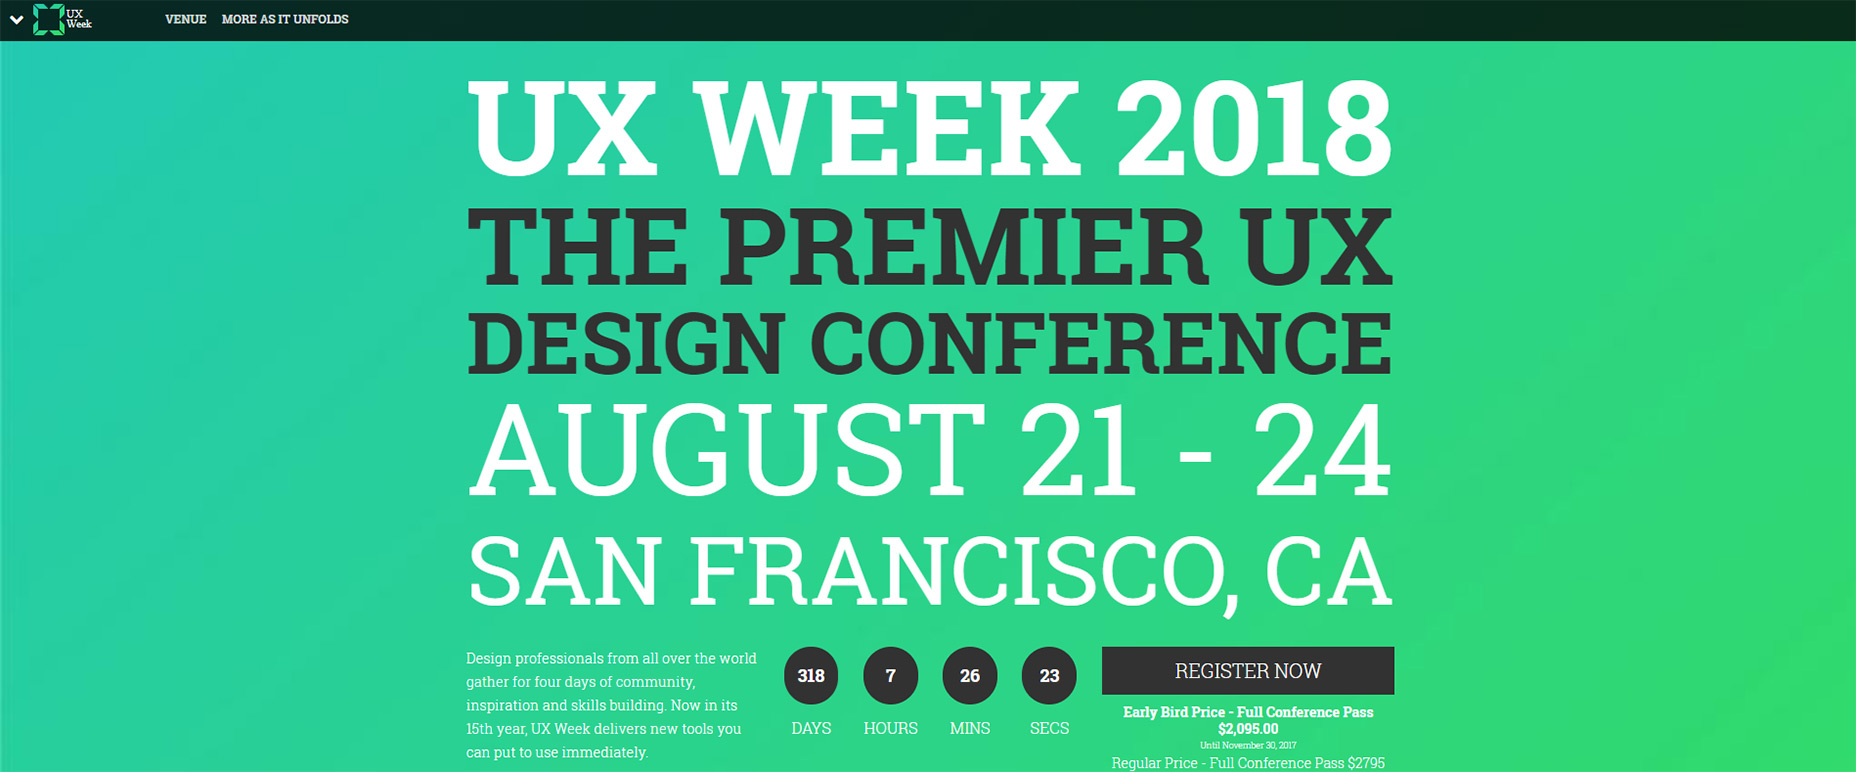 07-ux-týden-konference